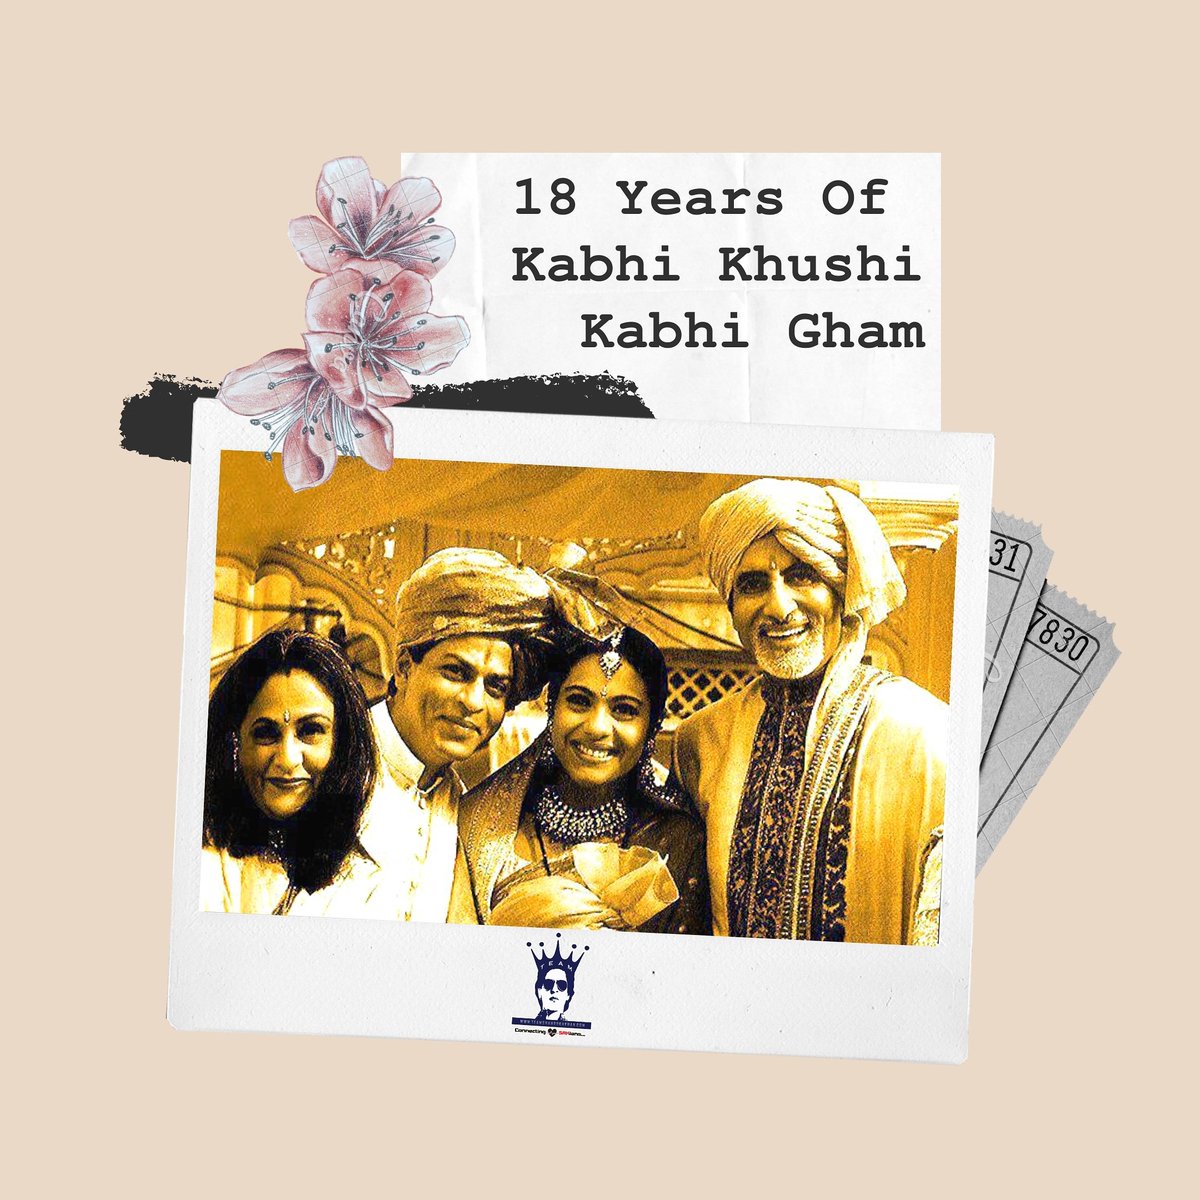 ‘It’s all about loving your parents’, 
Celebrating 18 Years Of #kabhikhushikabhigham 
#18YearsOfK3G #18YearsOfKabhiKhushiKabhiGham